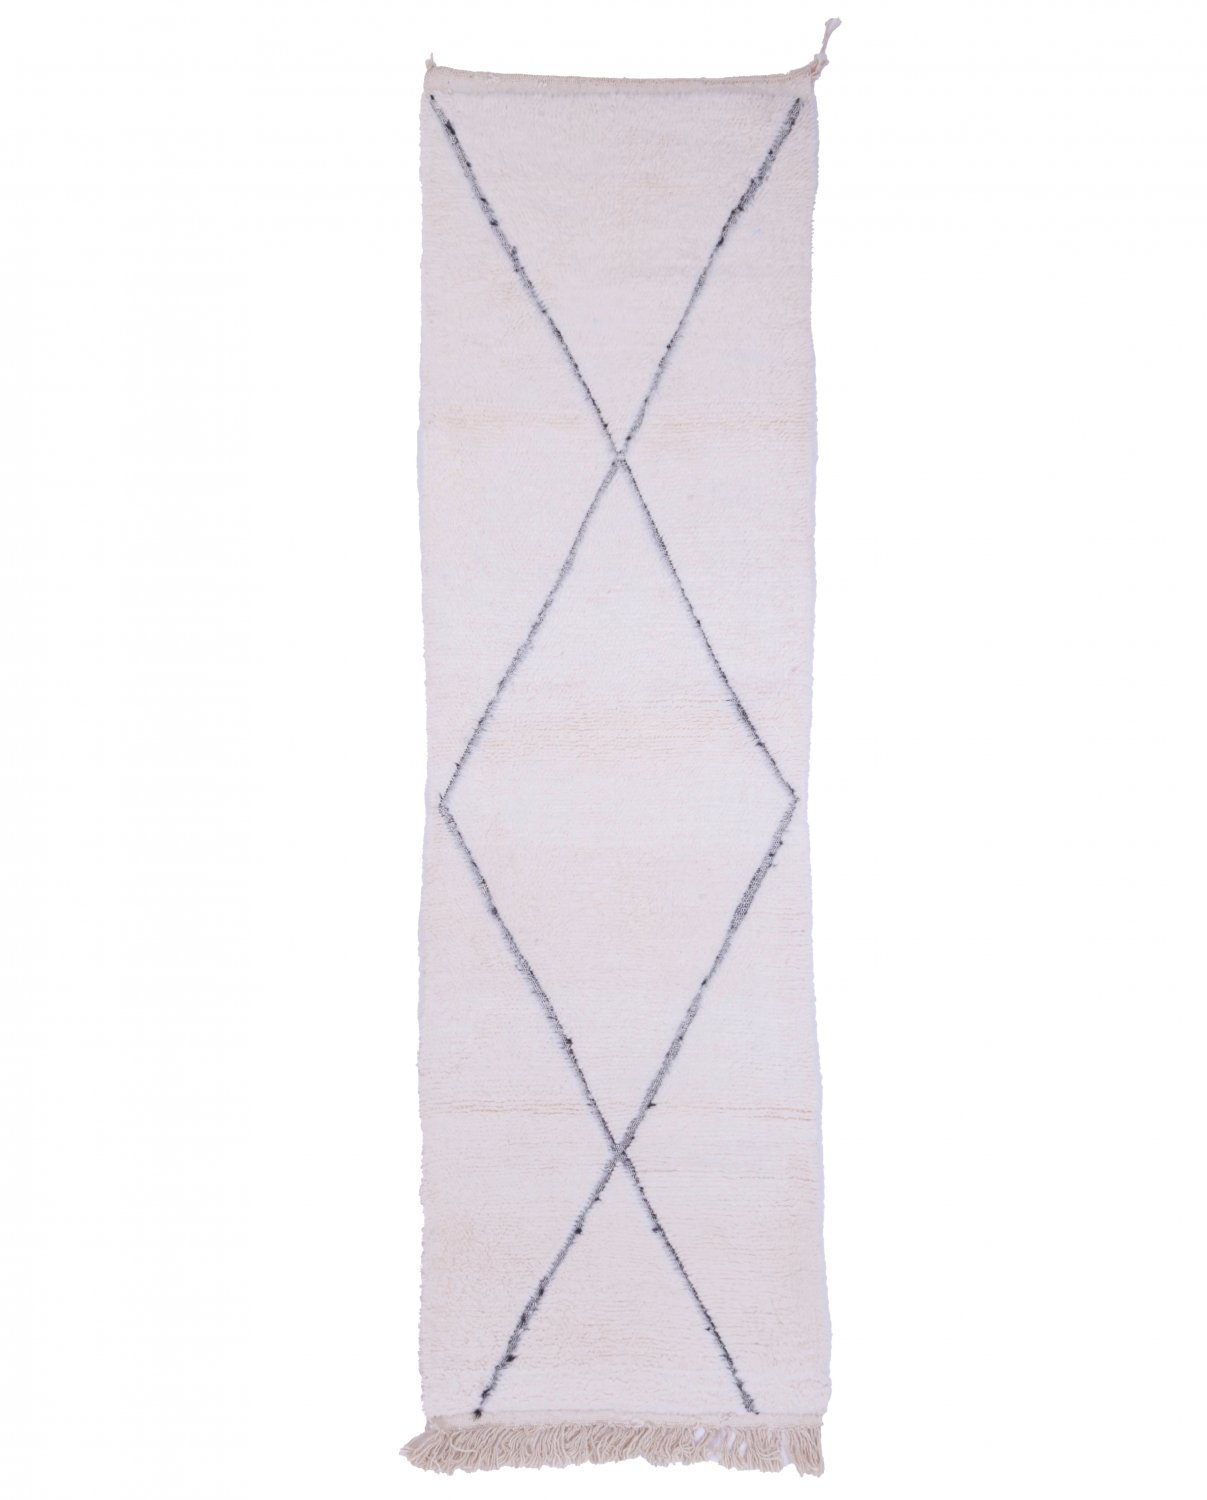 Marokkolainen Kilim matto Beni Ouarain 290 x 80 cm